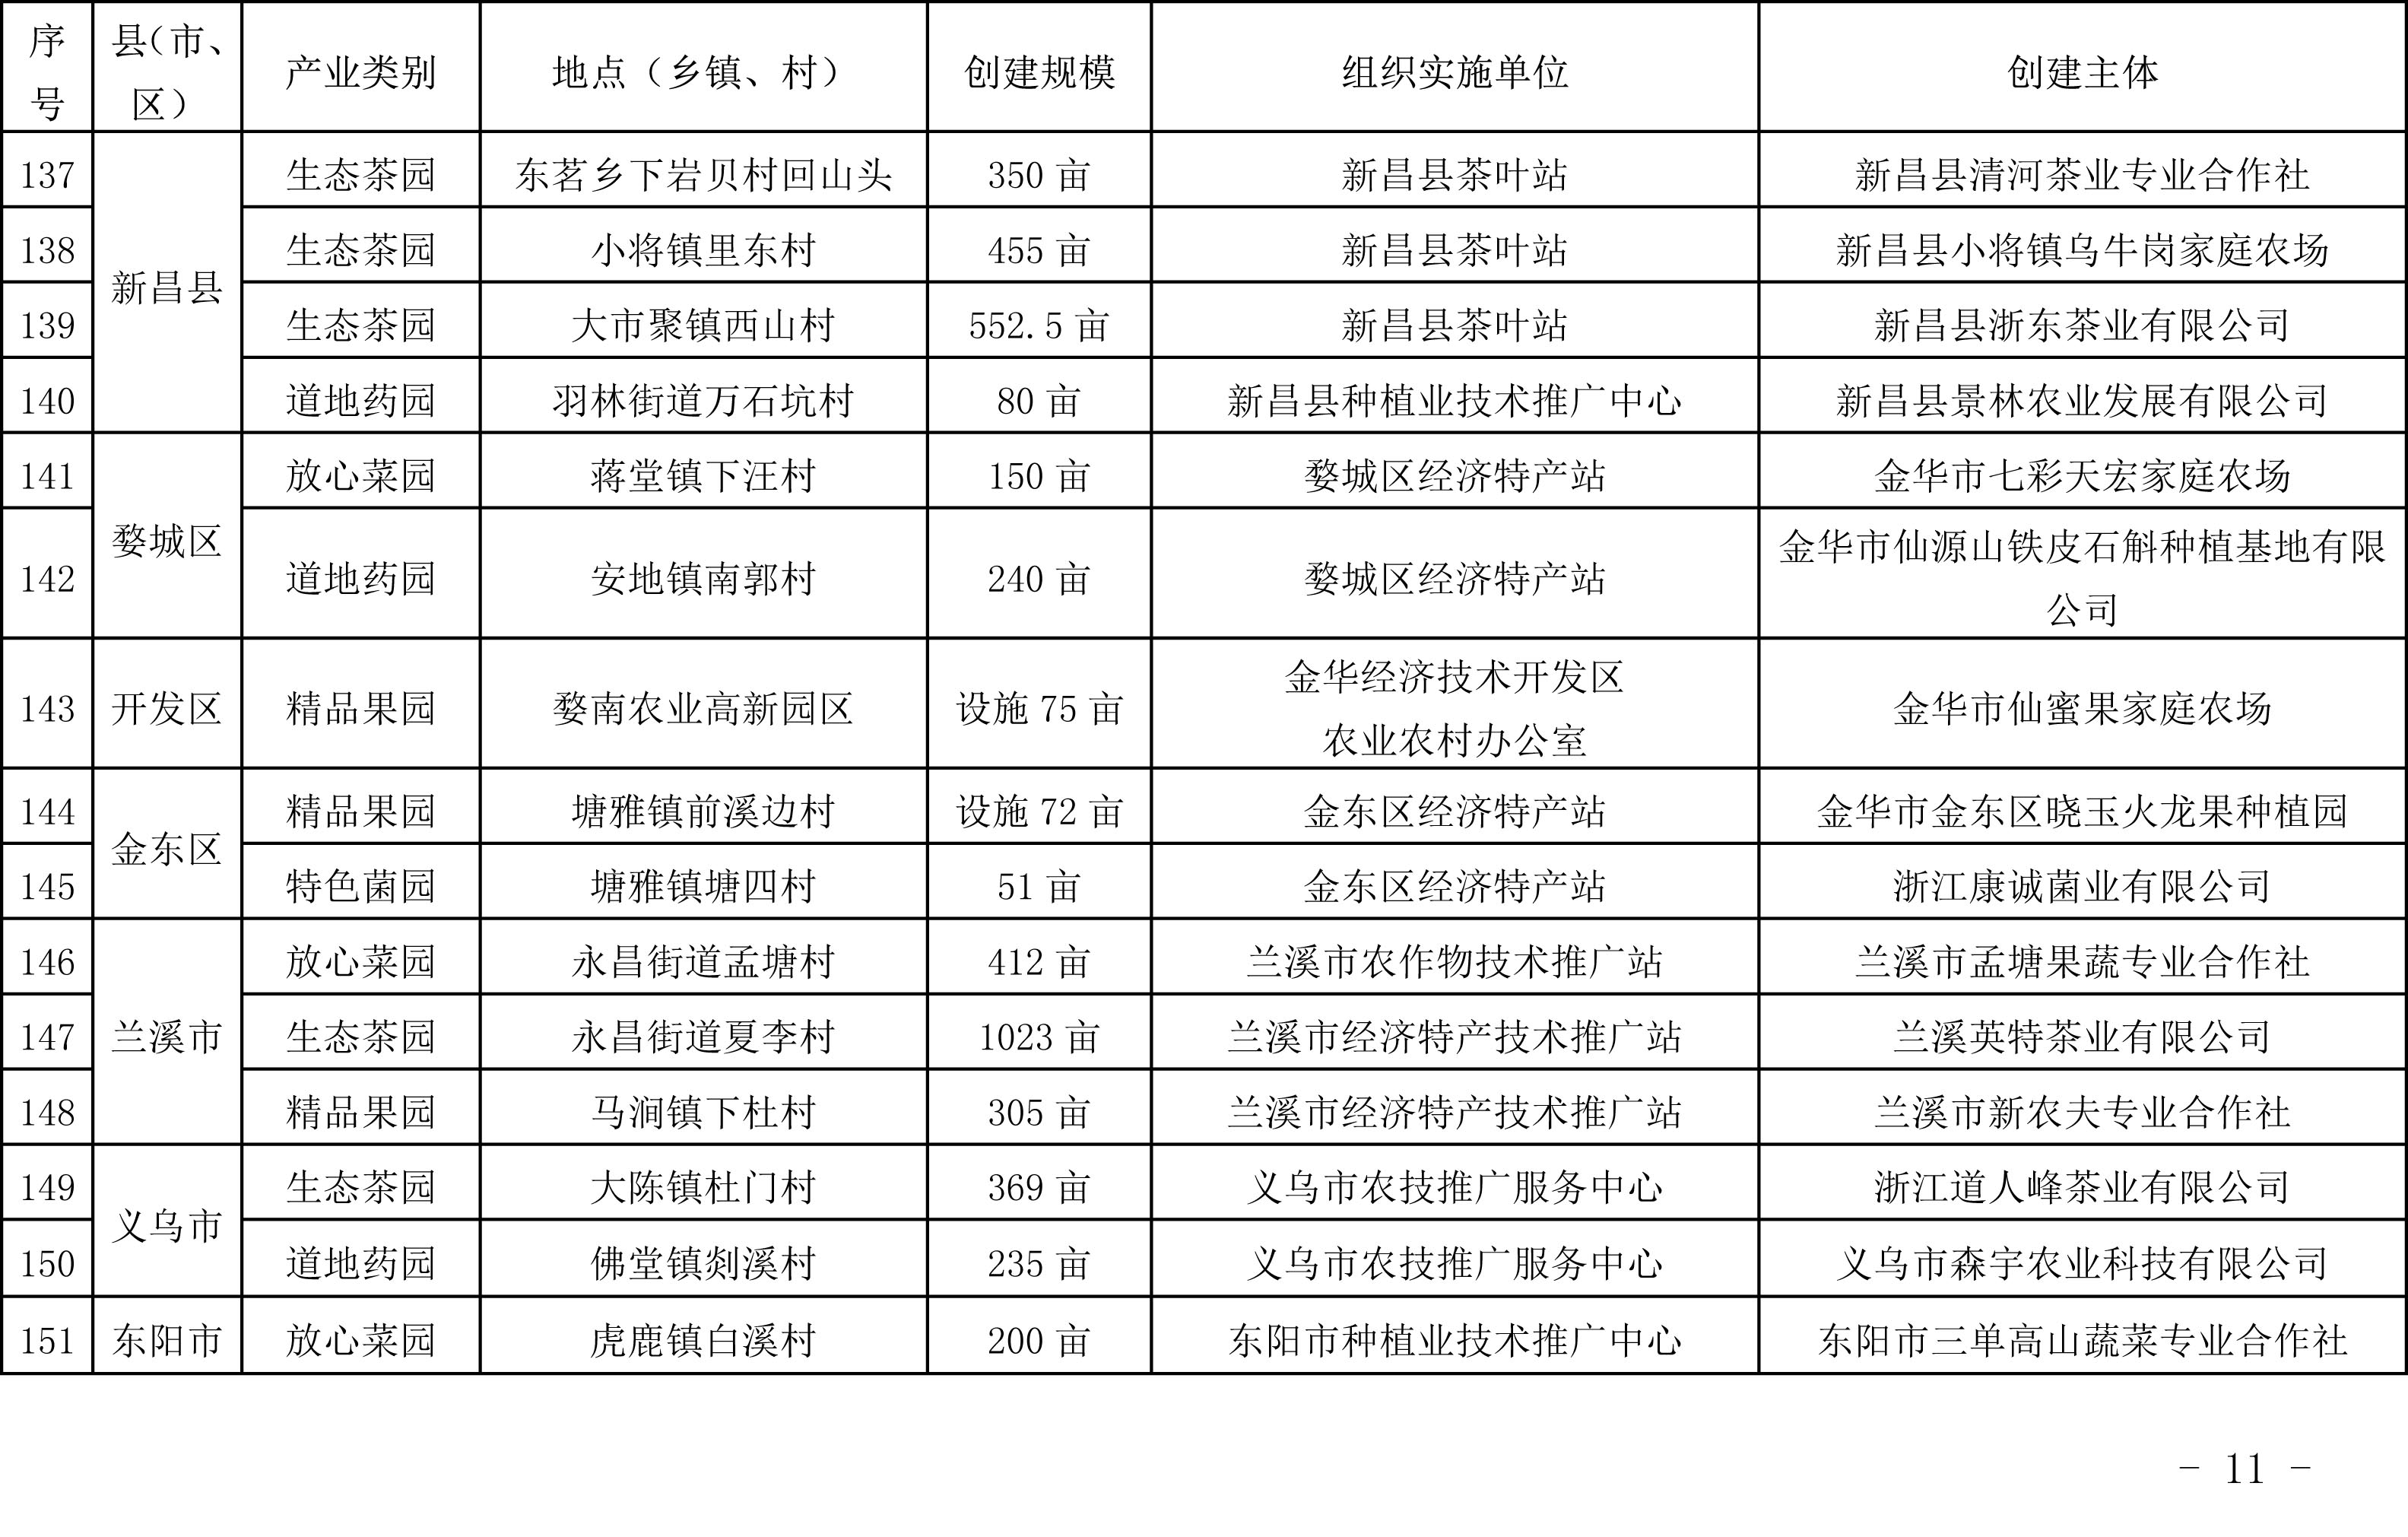 浙江省农业农村厅关于公布2019年度种植业“五园”创建省级示范基地名单的通知(图10)